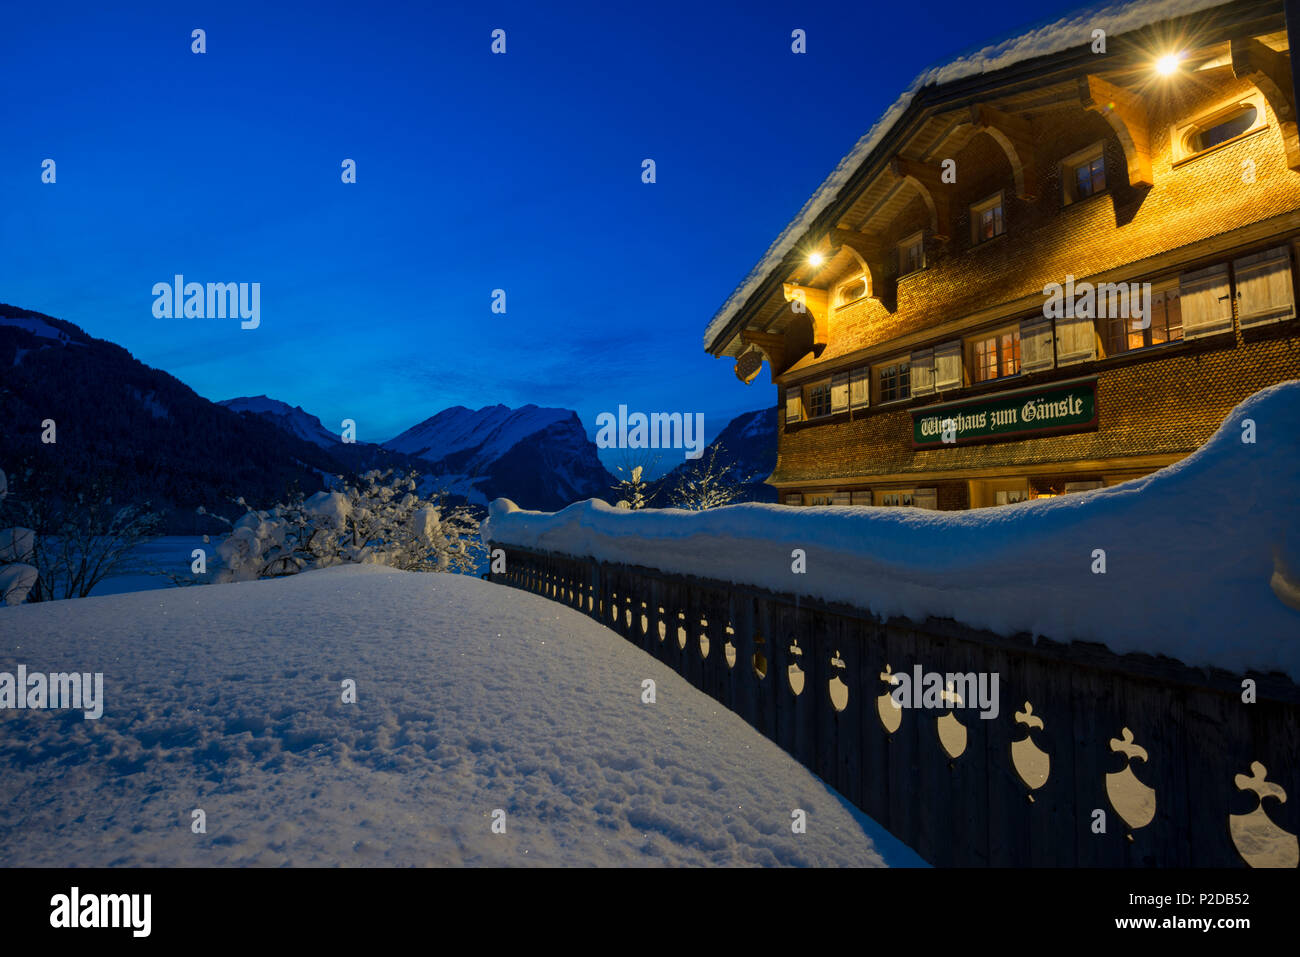 snow covered tavern at night, Schoppernau, Bregenz district, Vorarlberg, Austria Stock Photo